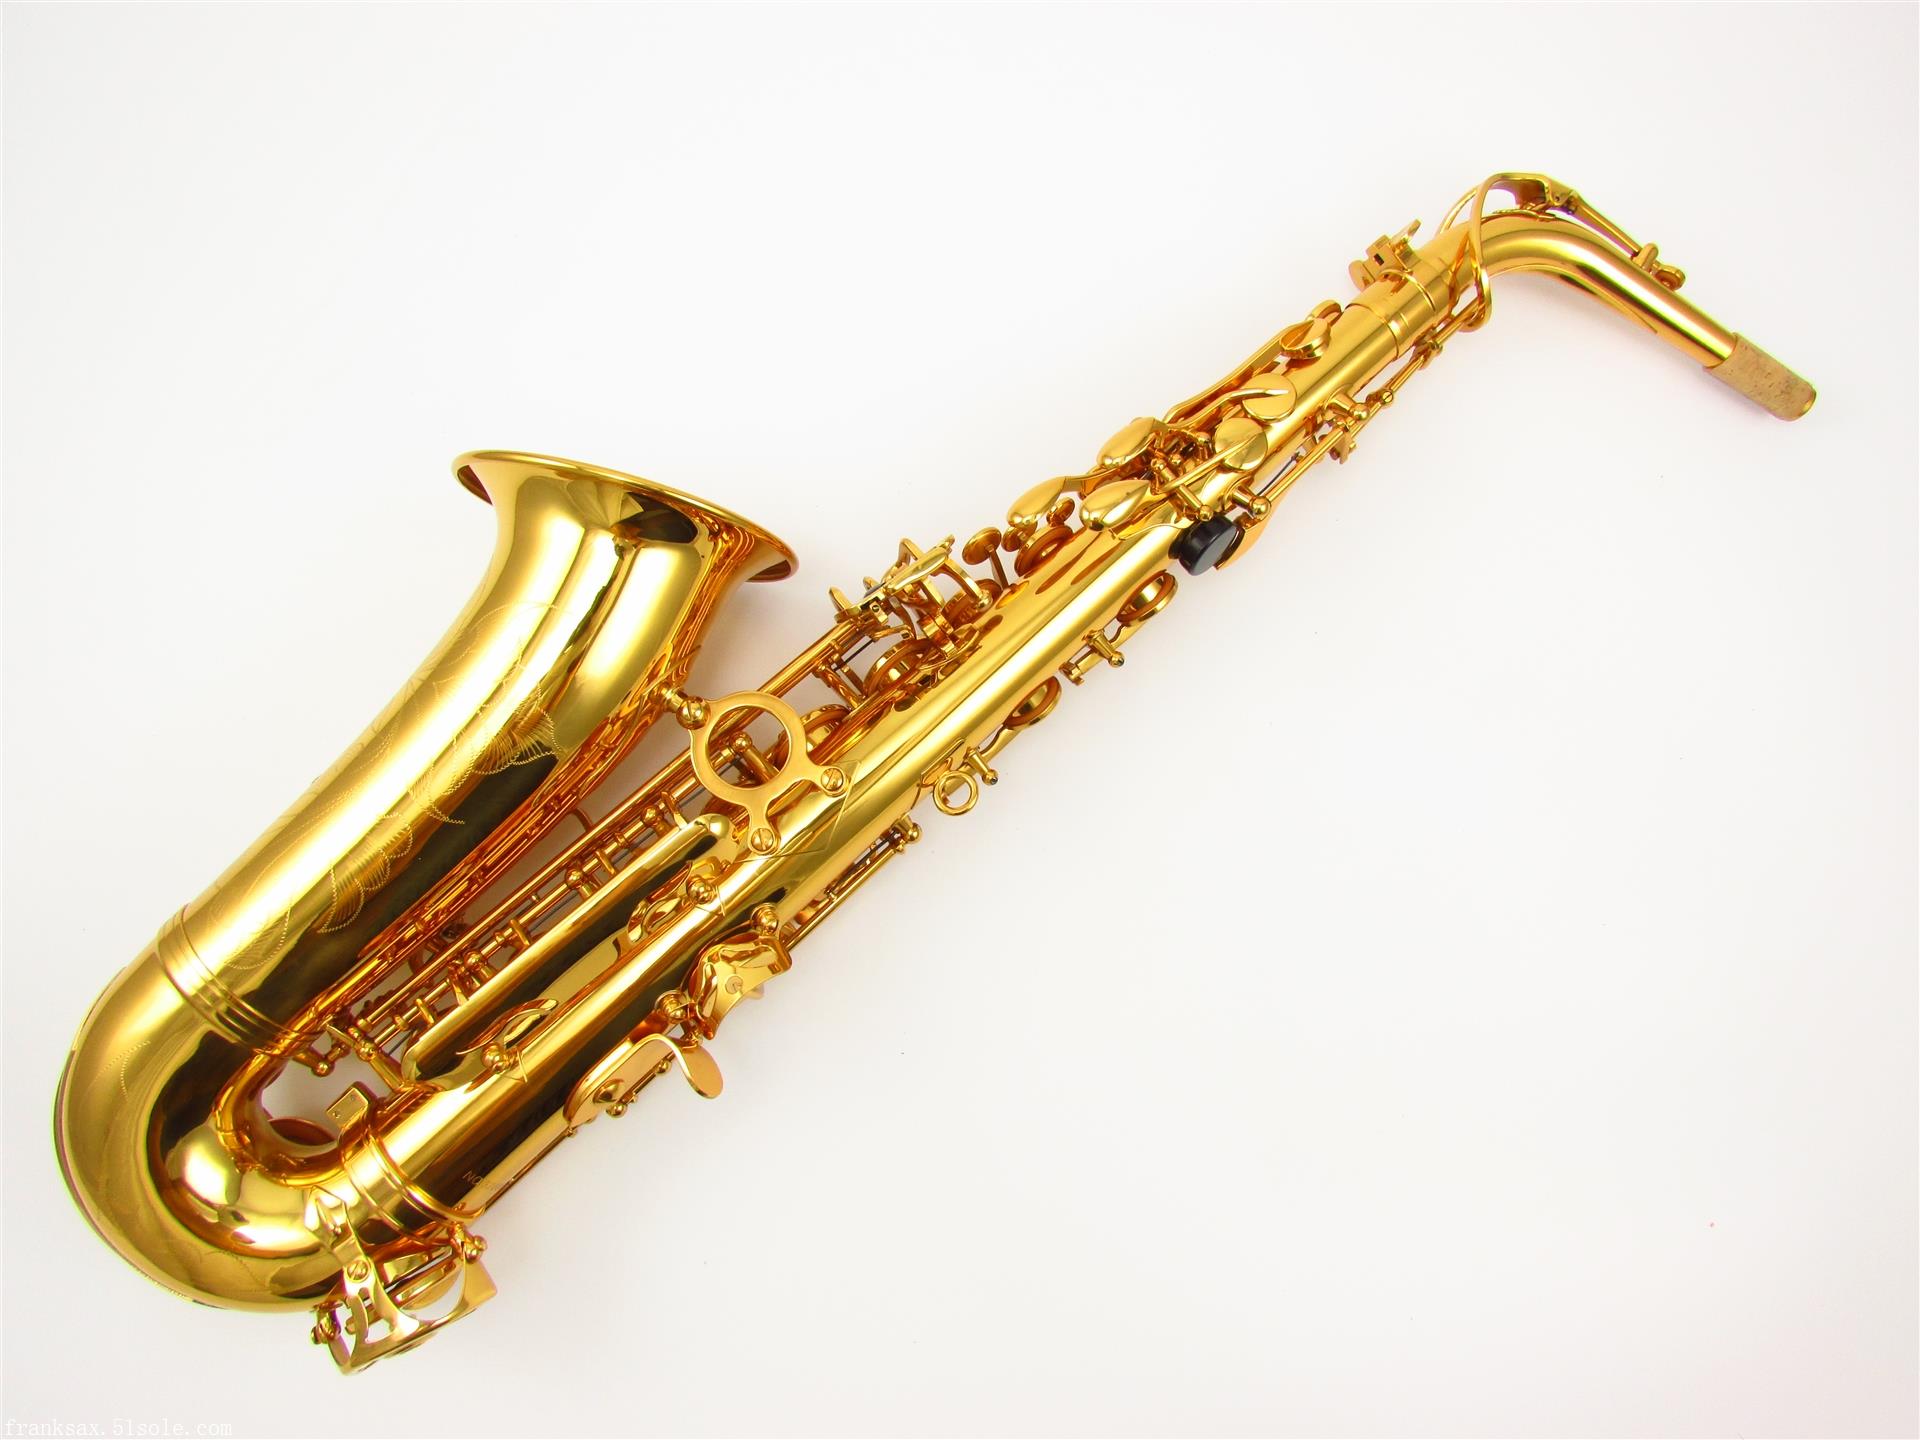 法兰克乐器有限公司,主要生产萨克斯,长笛,小号,单簧管等西洋管乐器